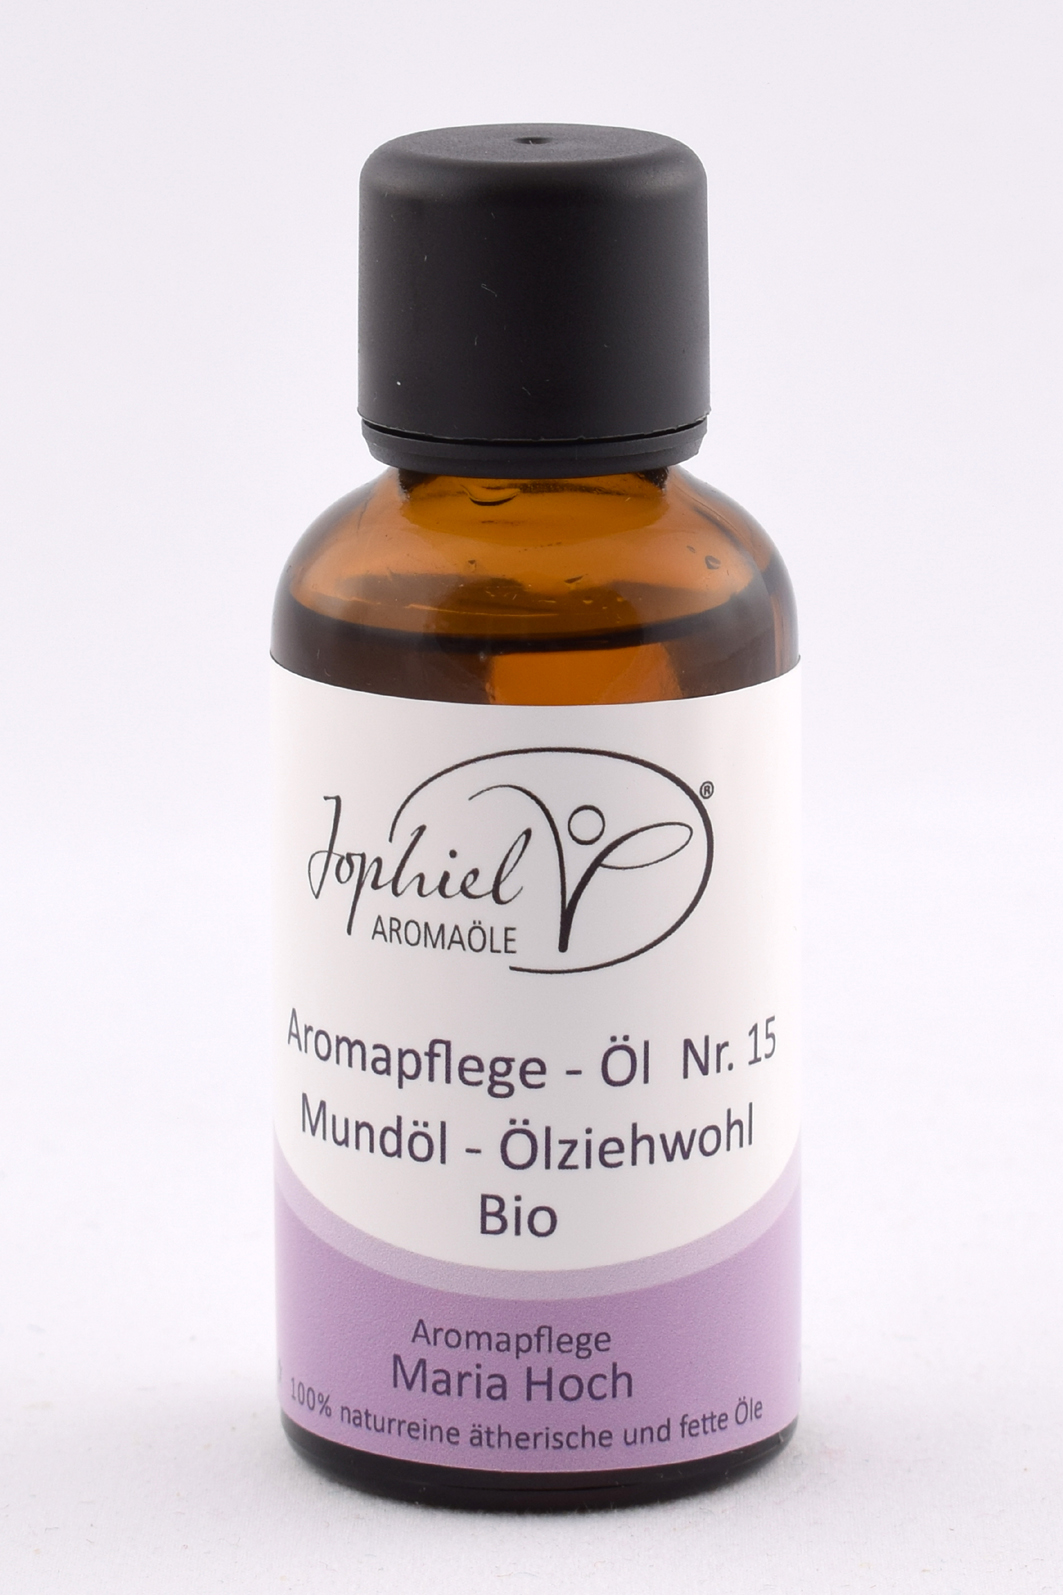 Aromapflege-Öl Nr. 15 Mundöl-Ölziehwohl 50 ml Bio